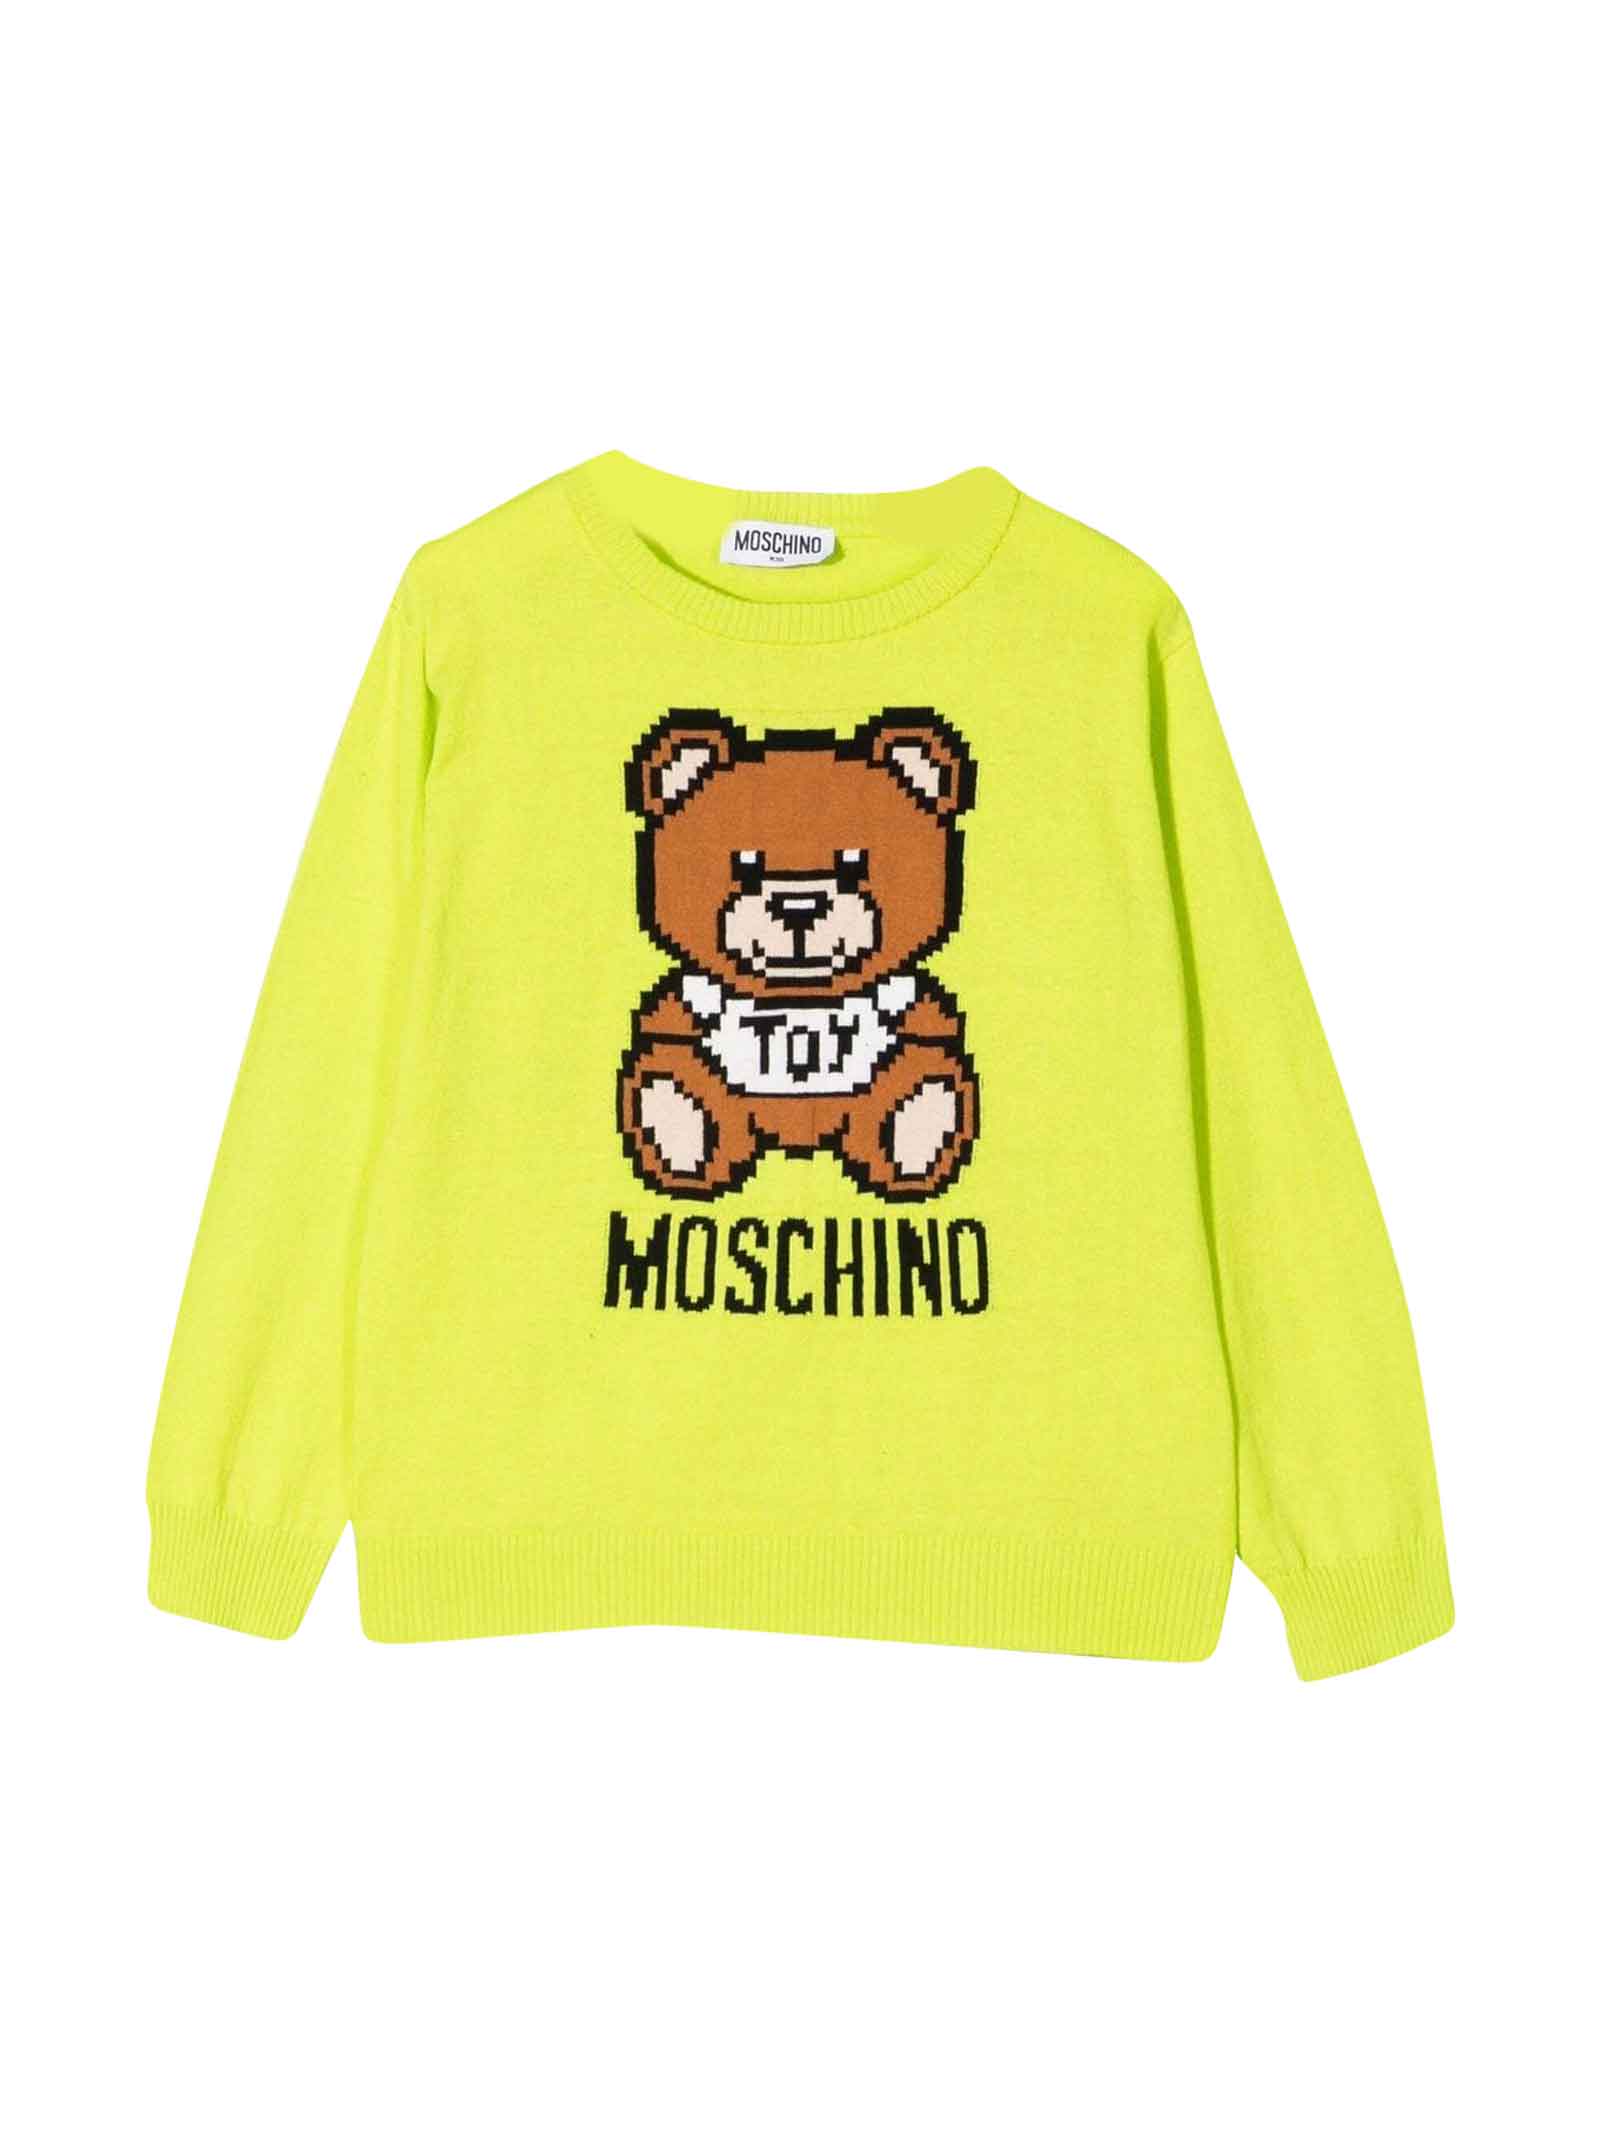 Moschino Unisex Yellow Sweatshirt